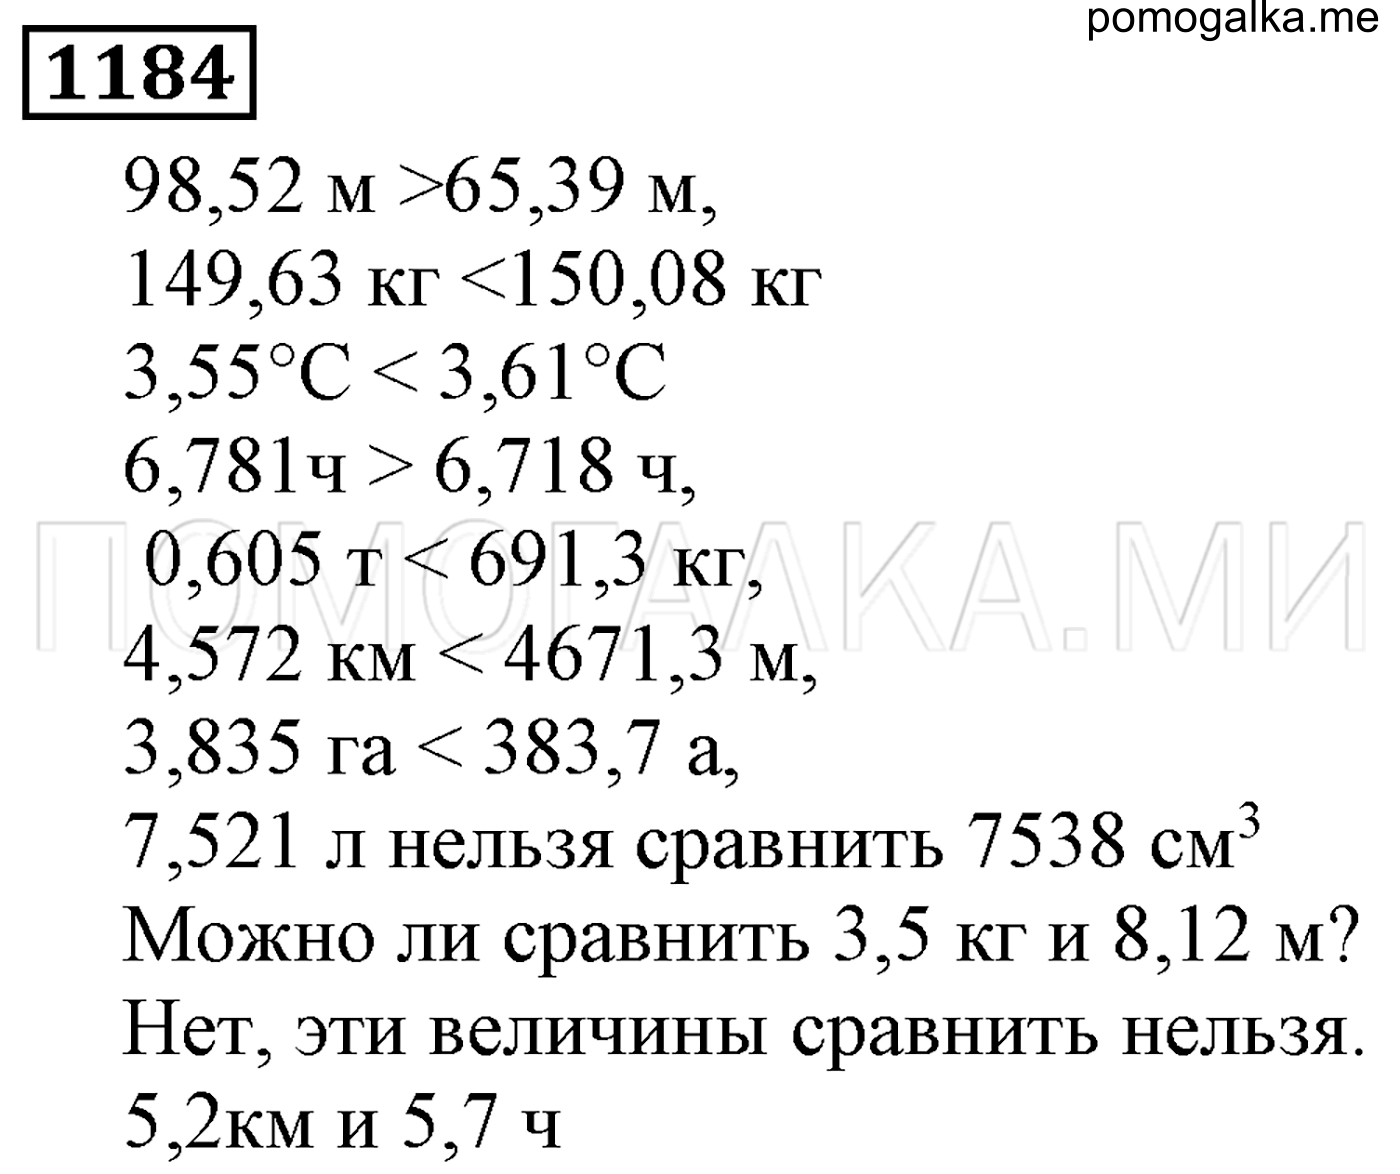 Математика 6 класс 1 часть номер 1184